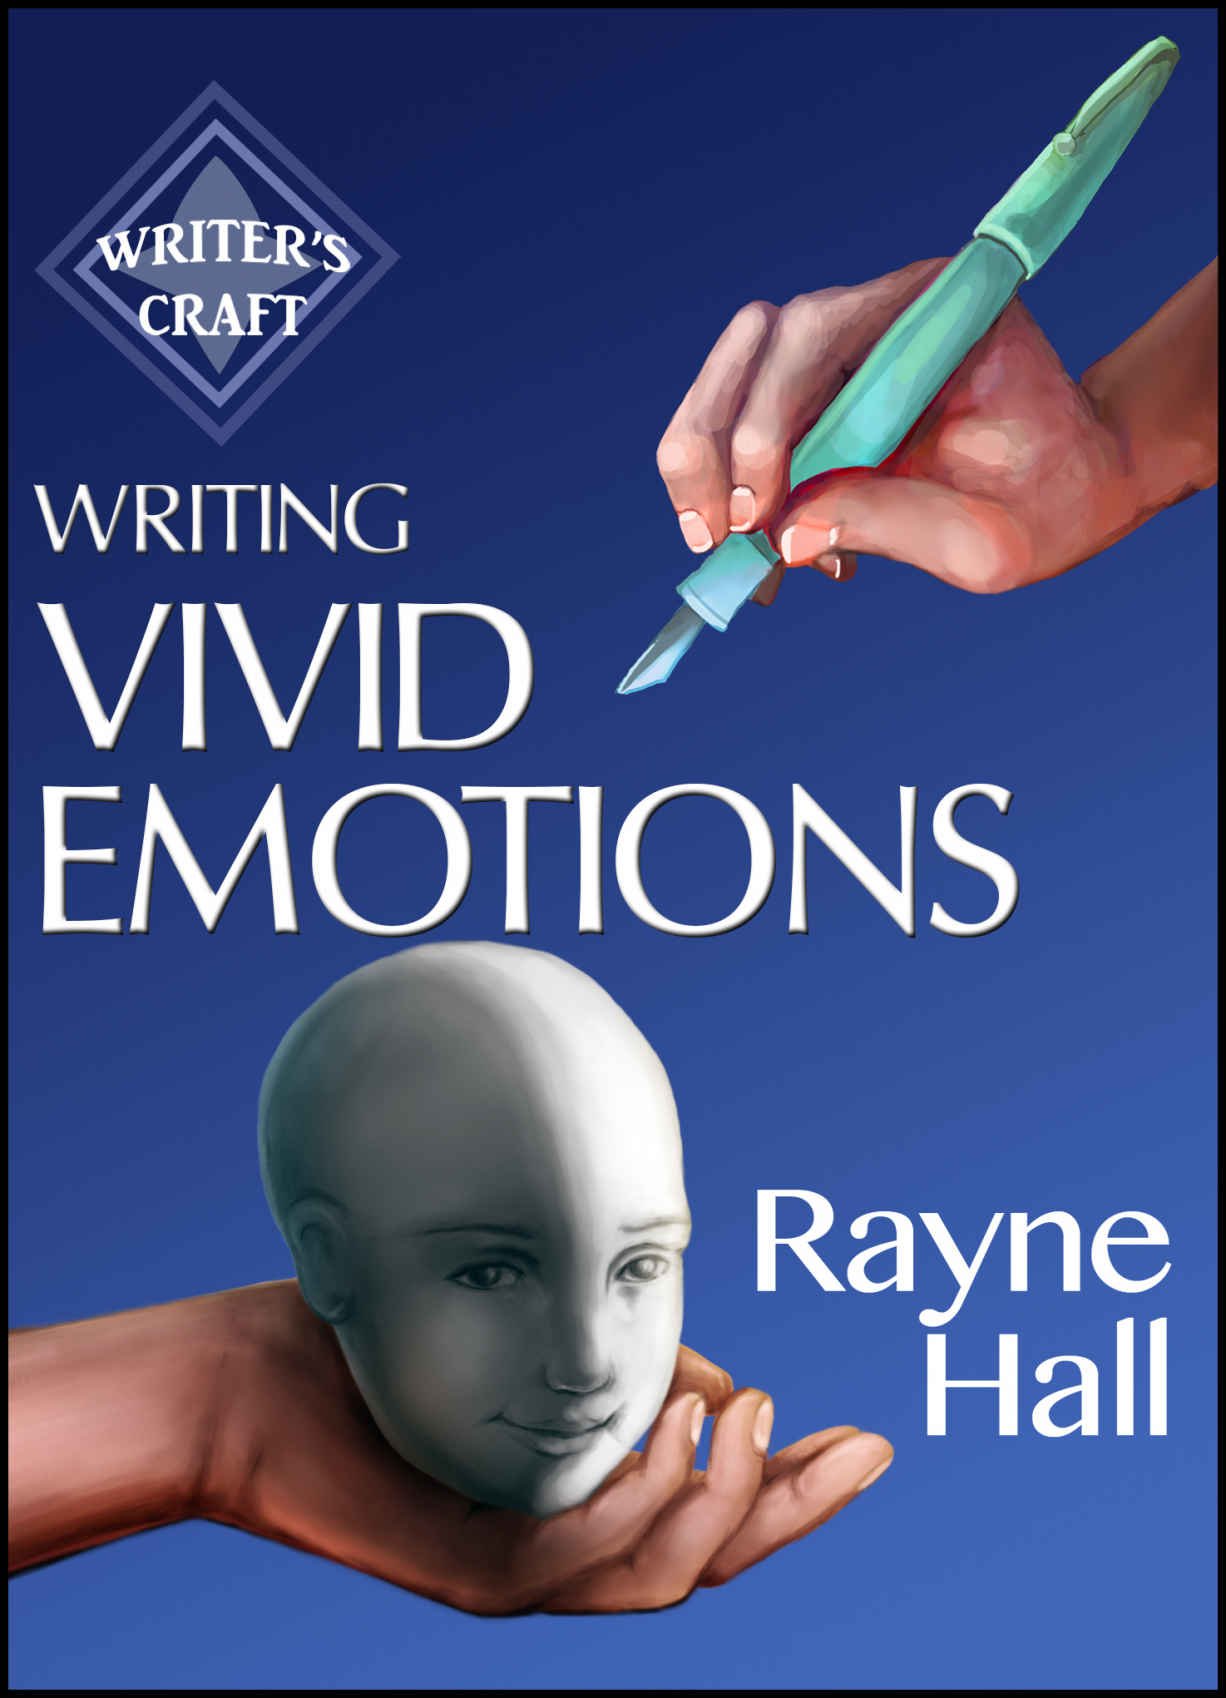 Write hall. Vivid emotions. Emotions writing.